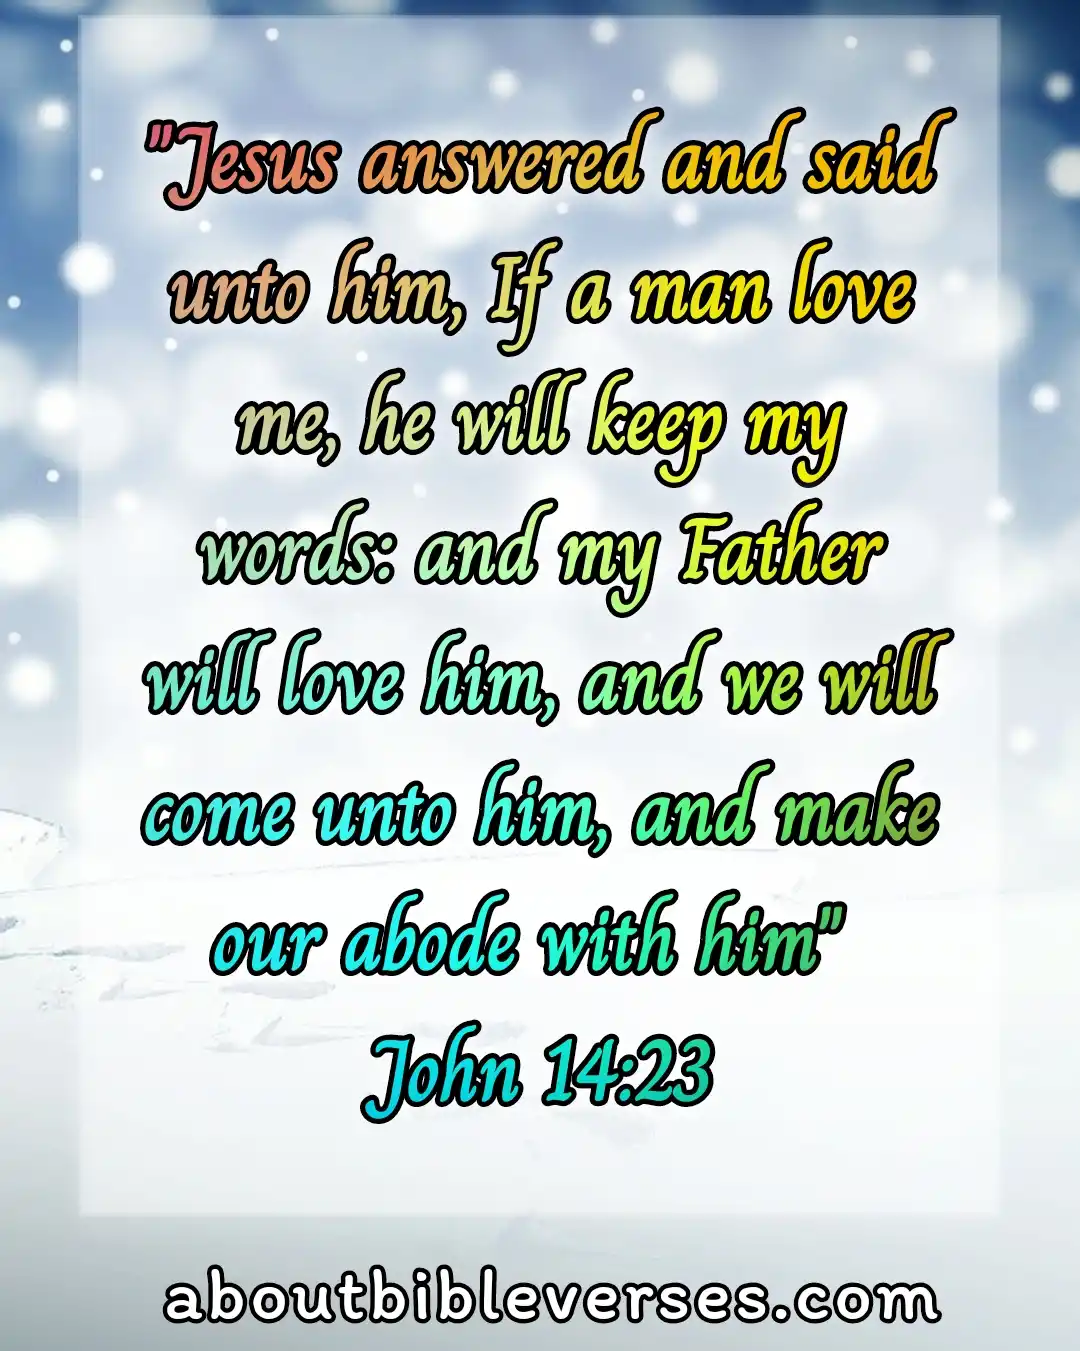 Today bible verse (John 14:23)